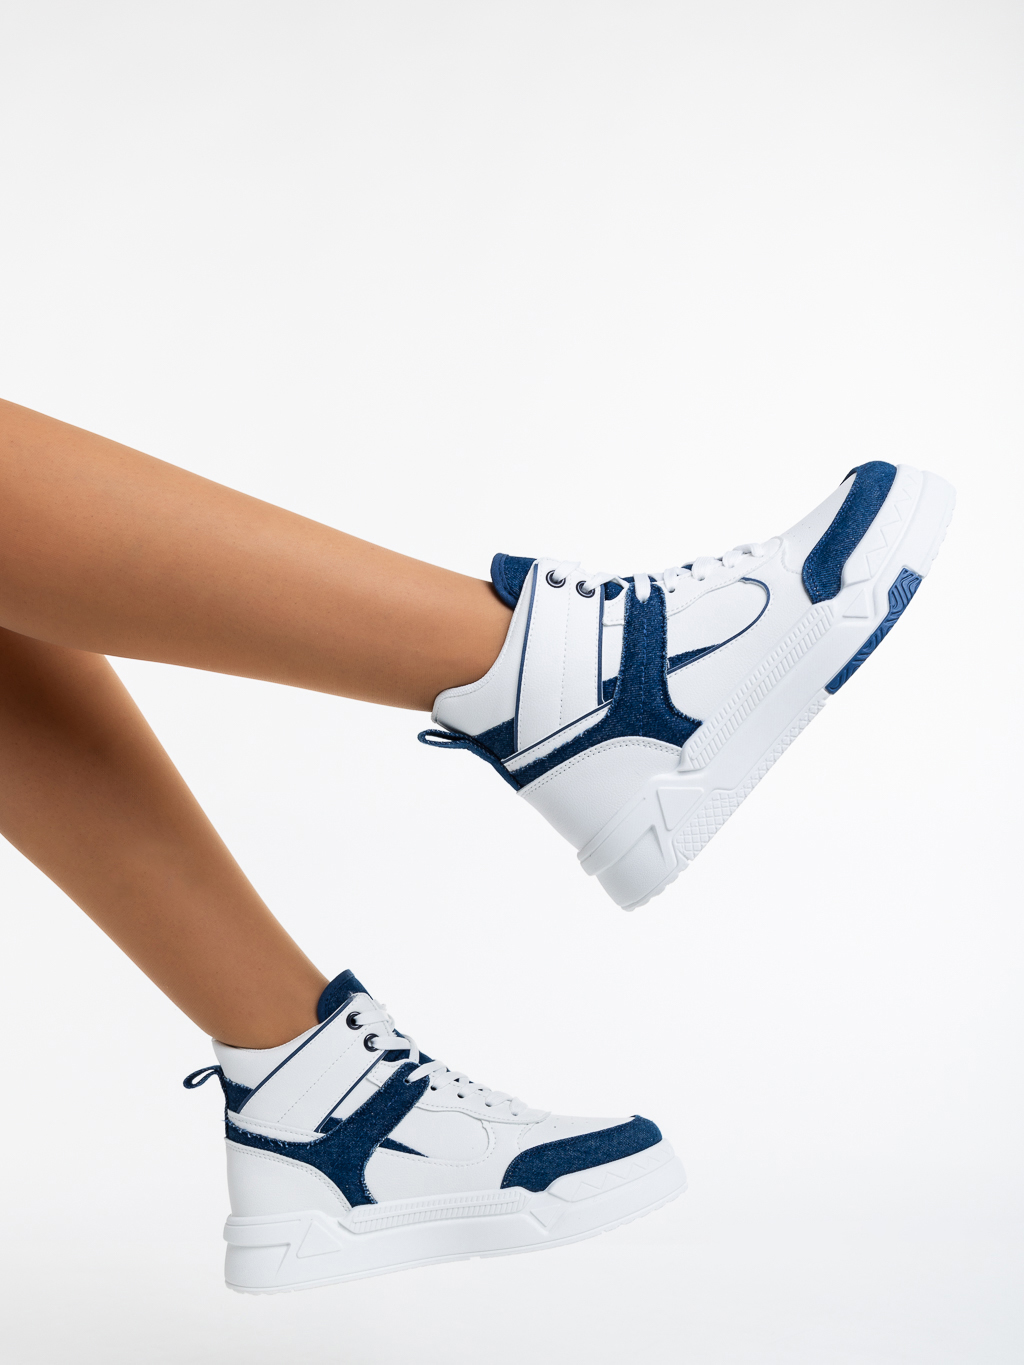 Дамски спортни обувки бели с тъмно синьо от еко кожа и текстилен материал Saranya - Kalapod.bg